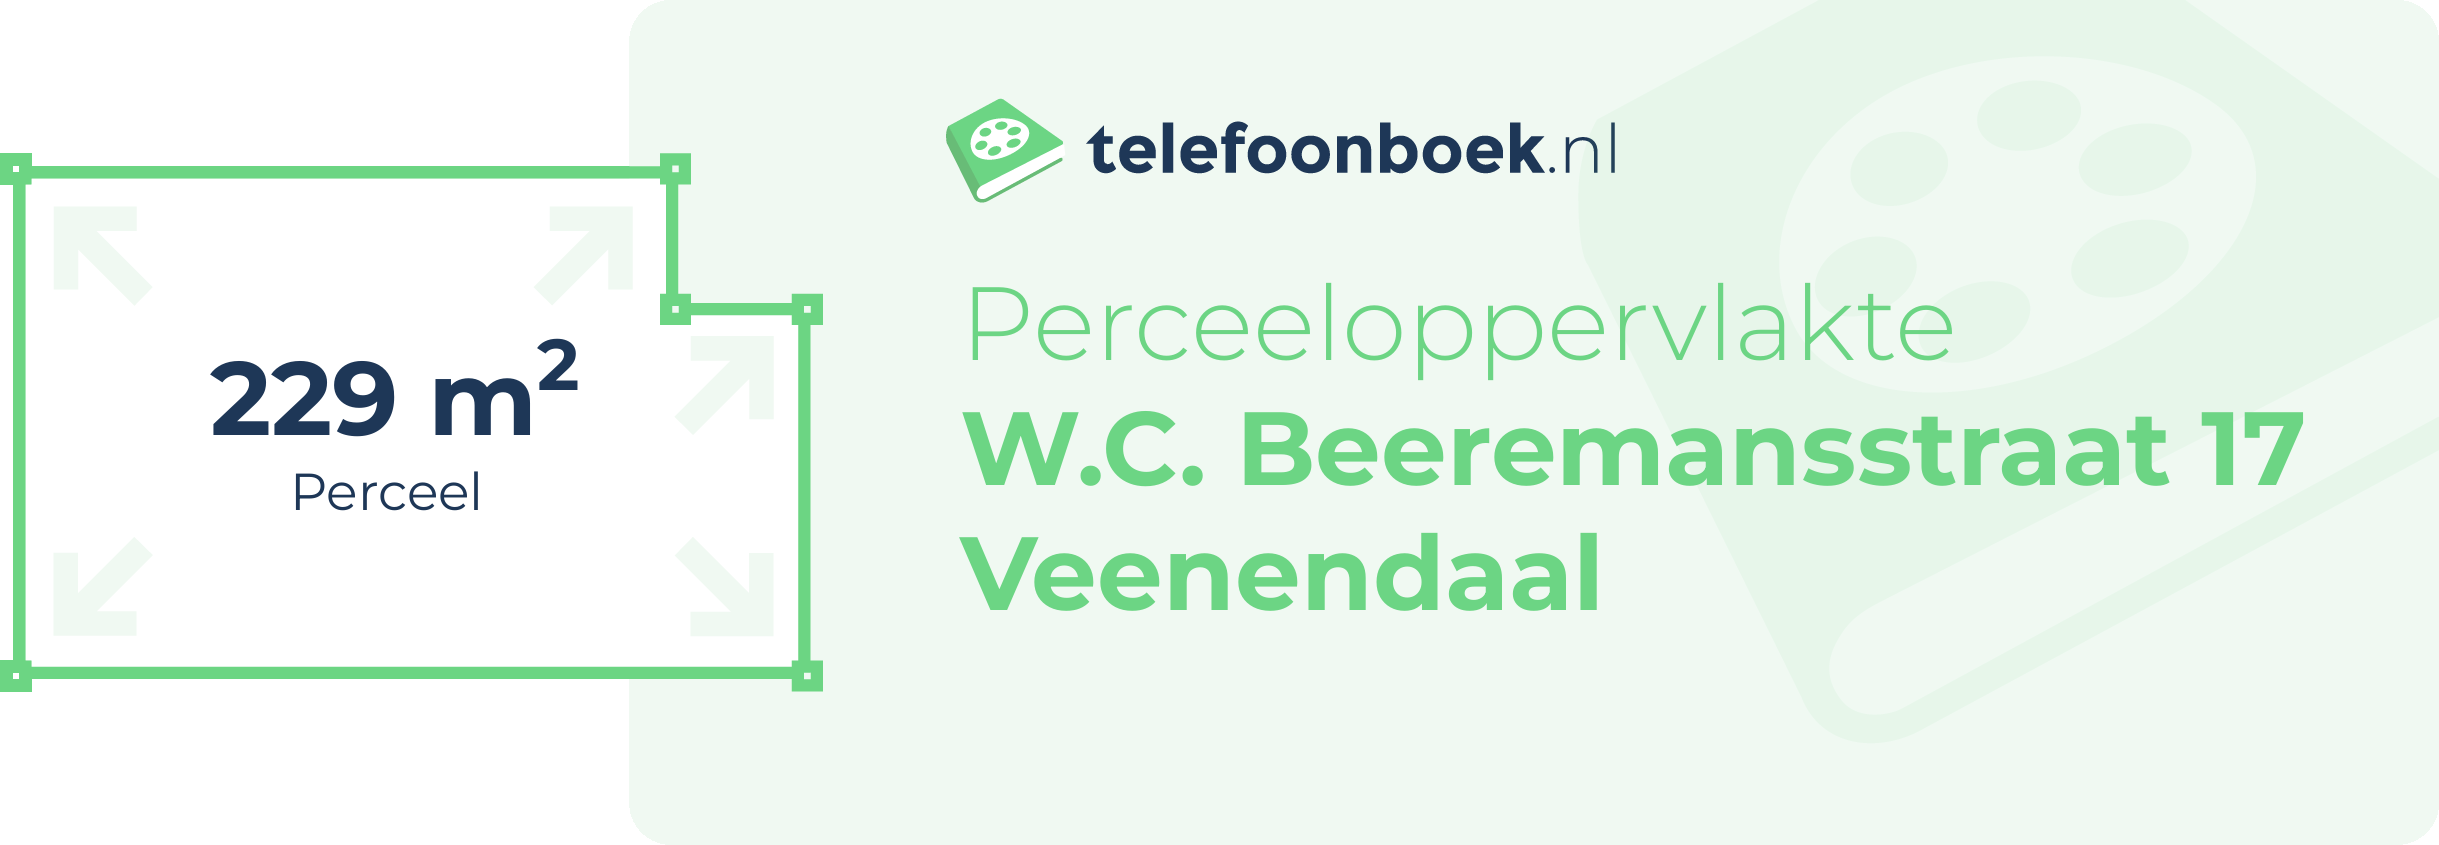 Perceeloppervlakte W.C. Beeremansstraat 17 Veenendaal